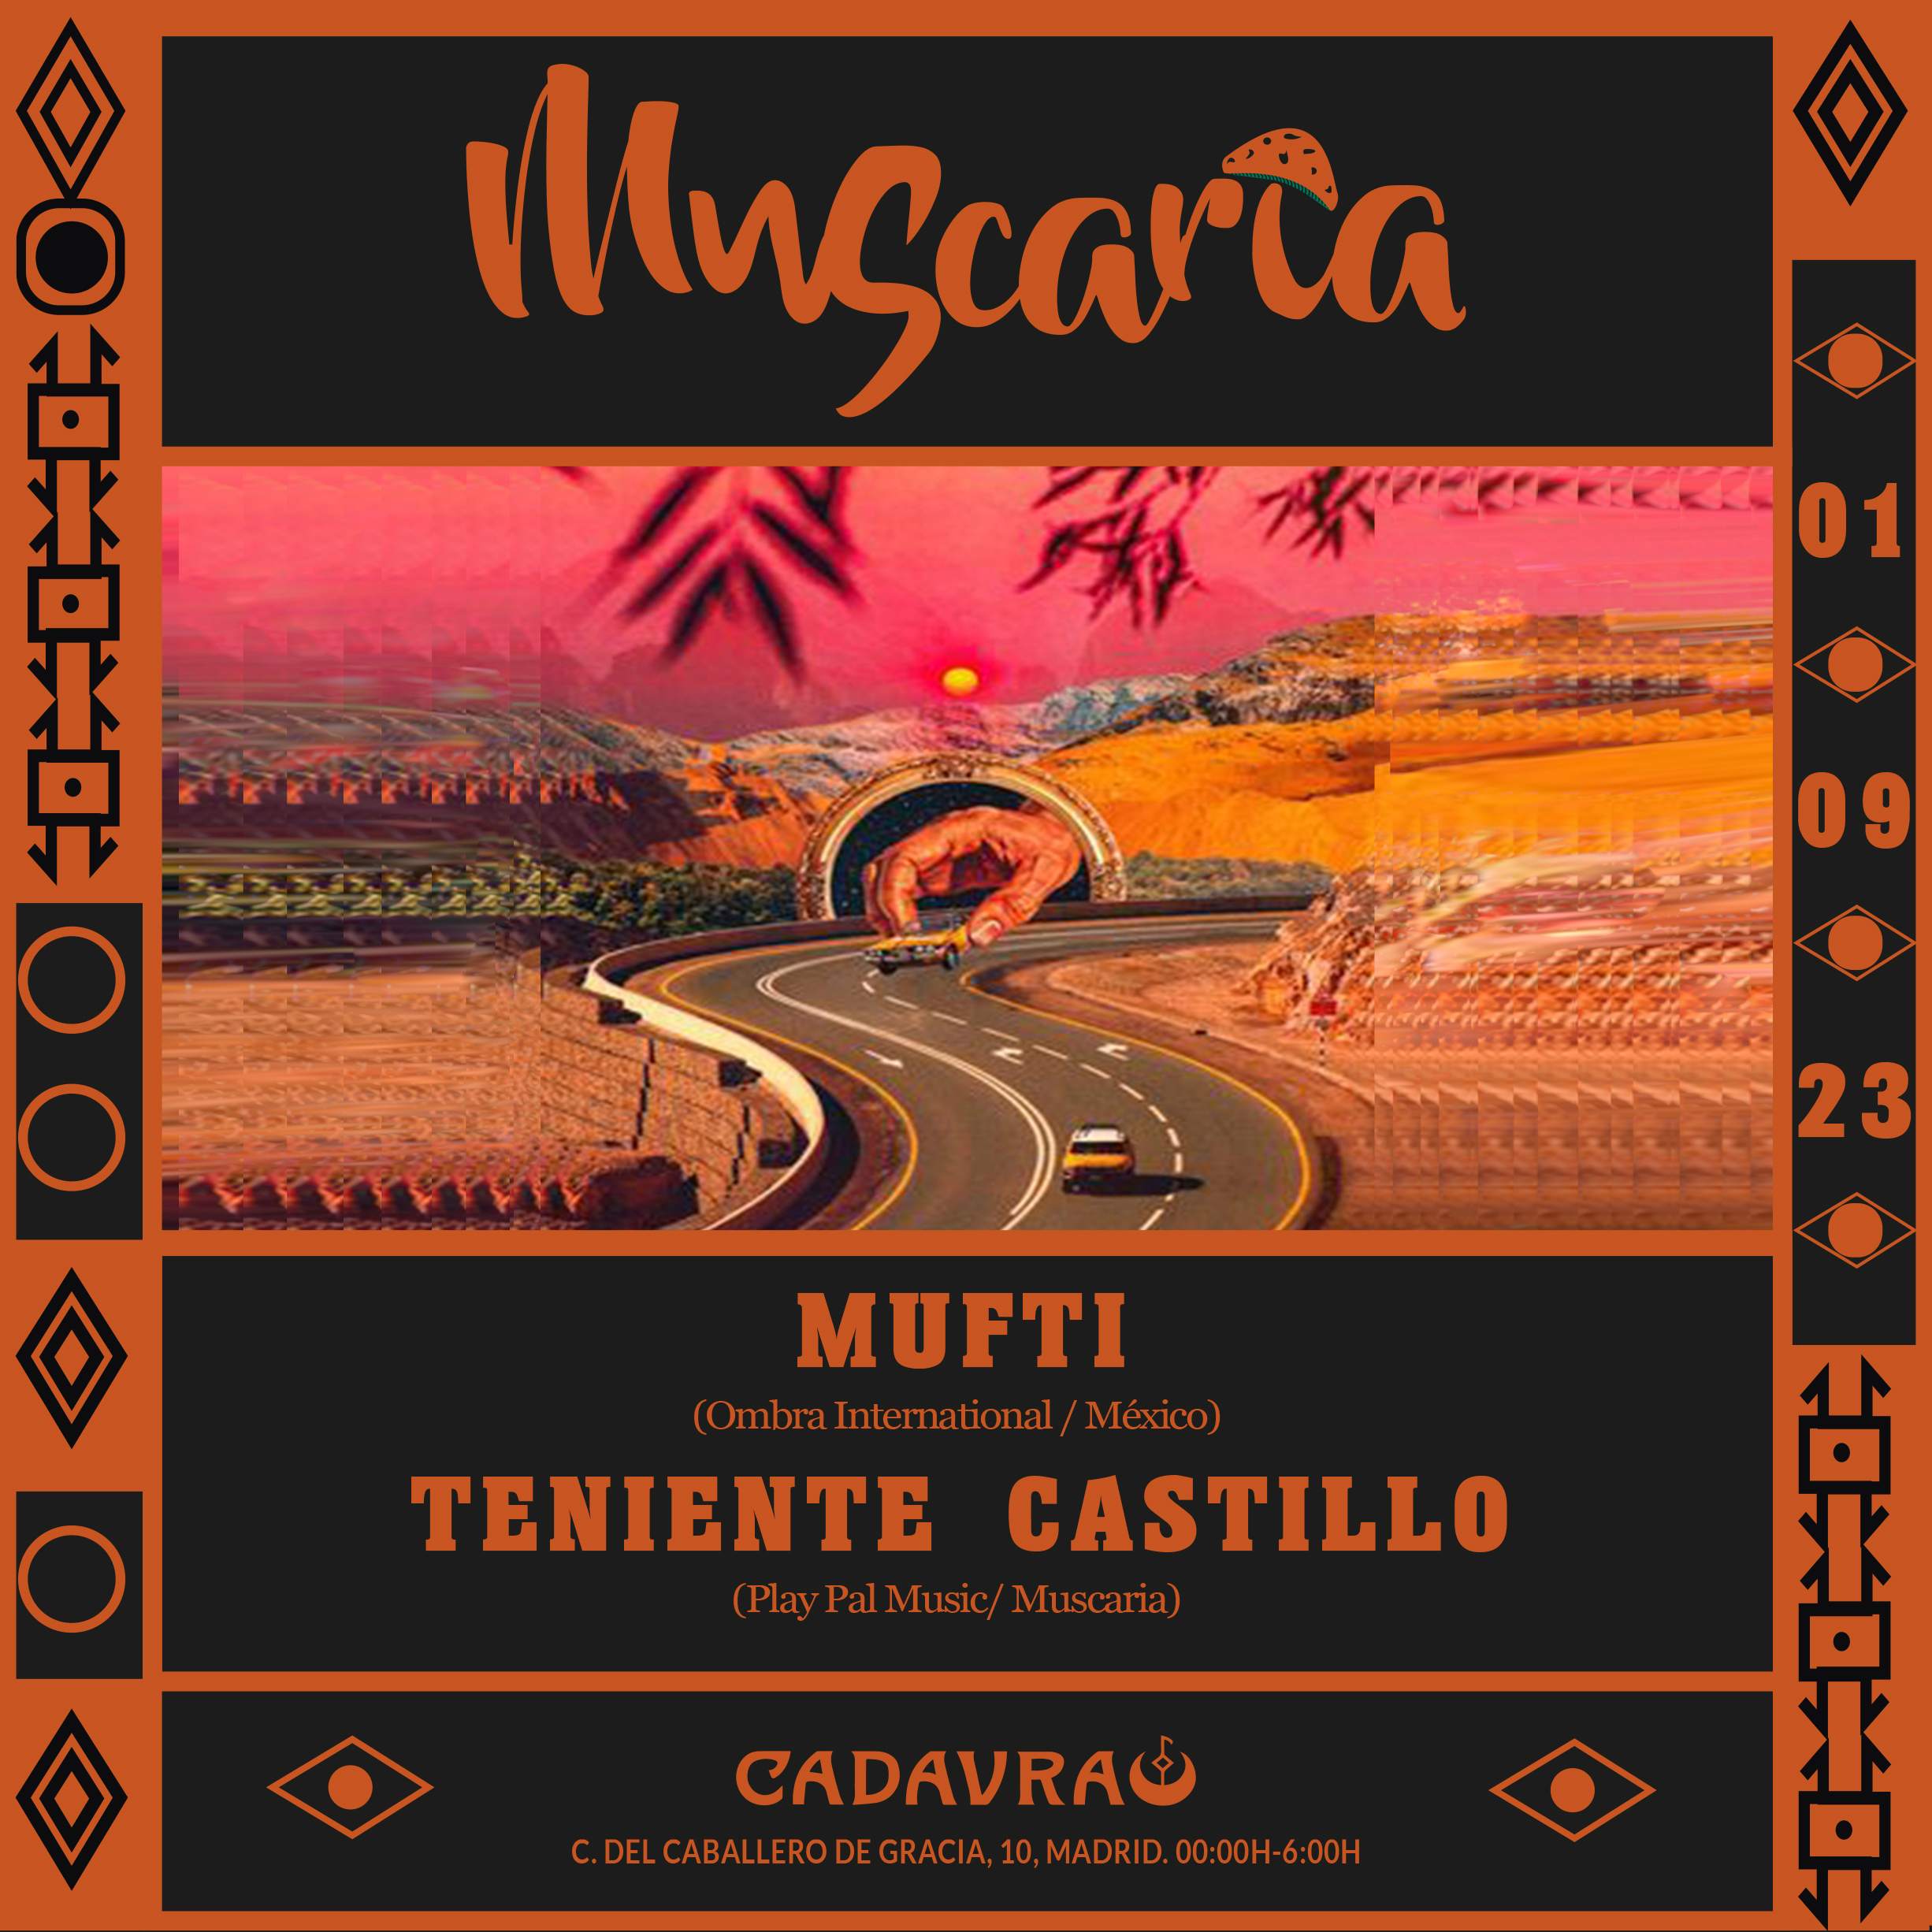 Muscaria #012 with Mufti + Teniente Castillo - フライヤー裏